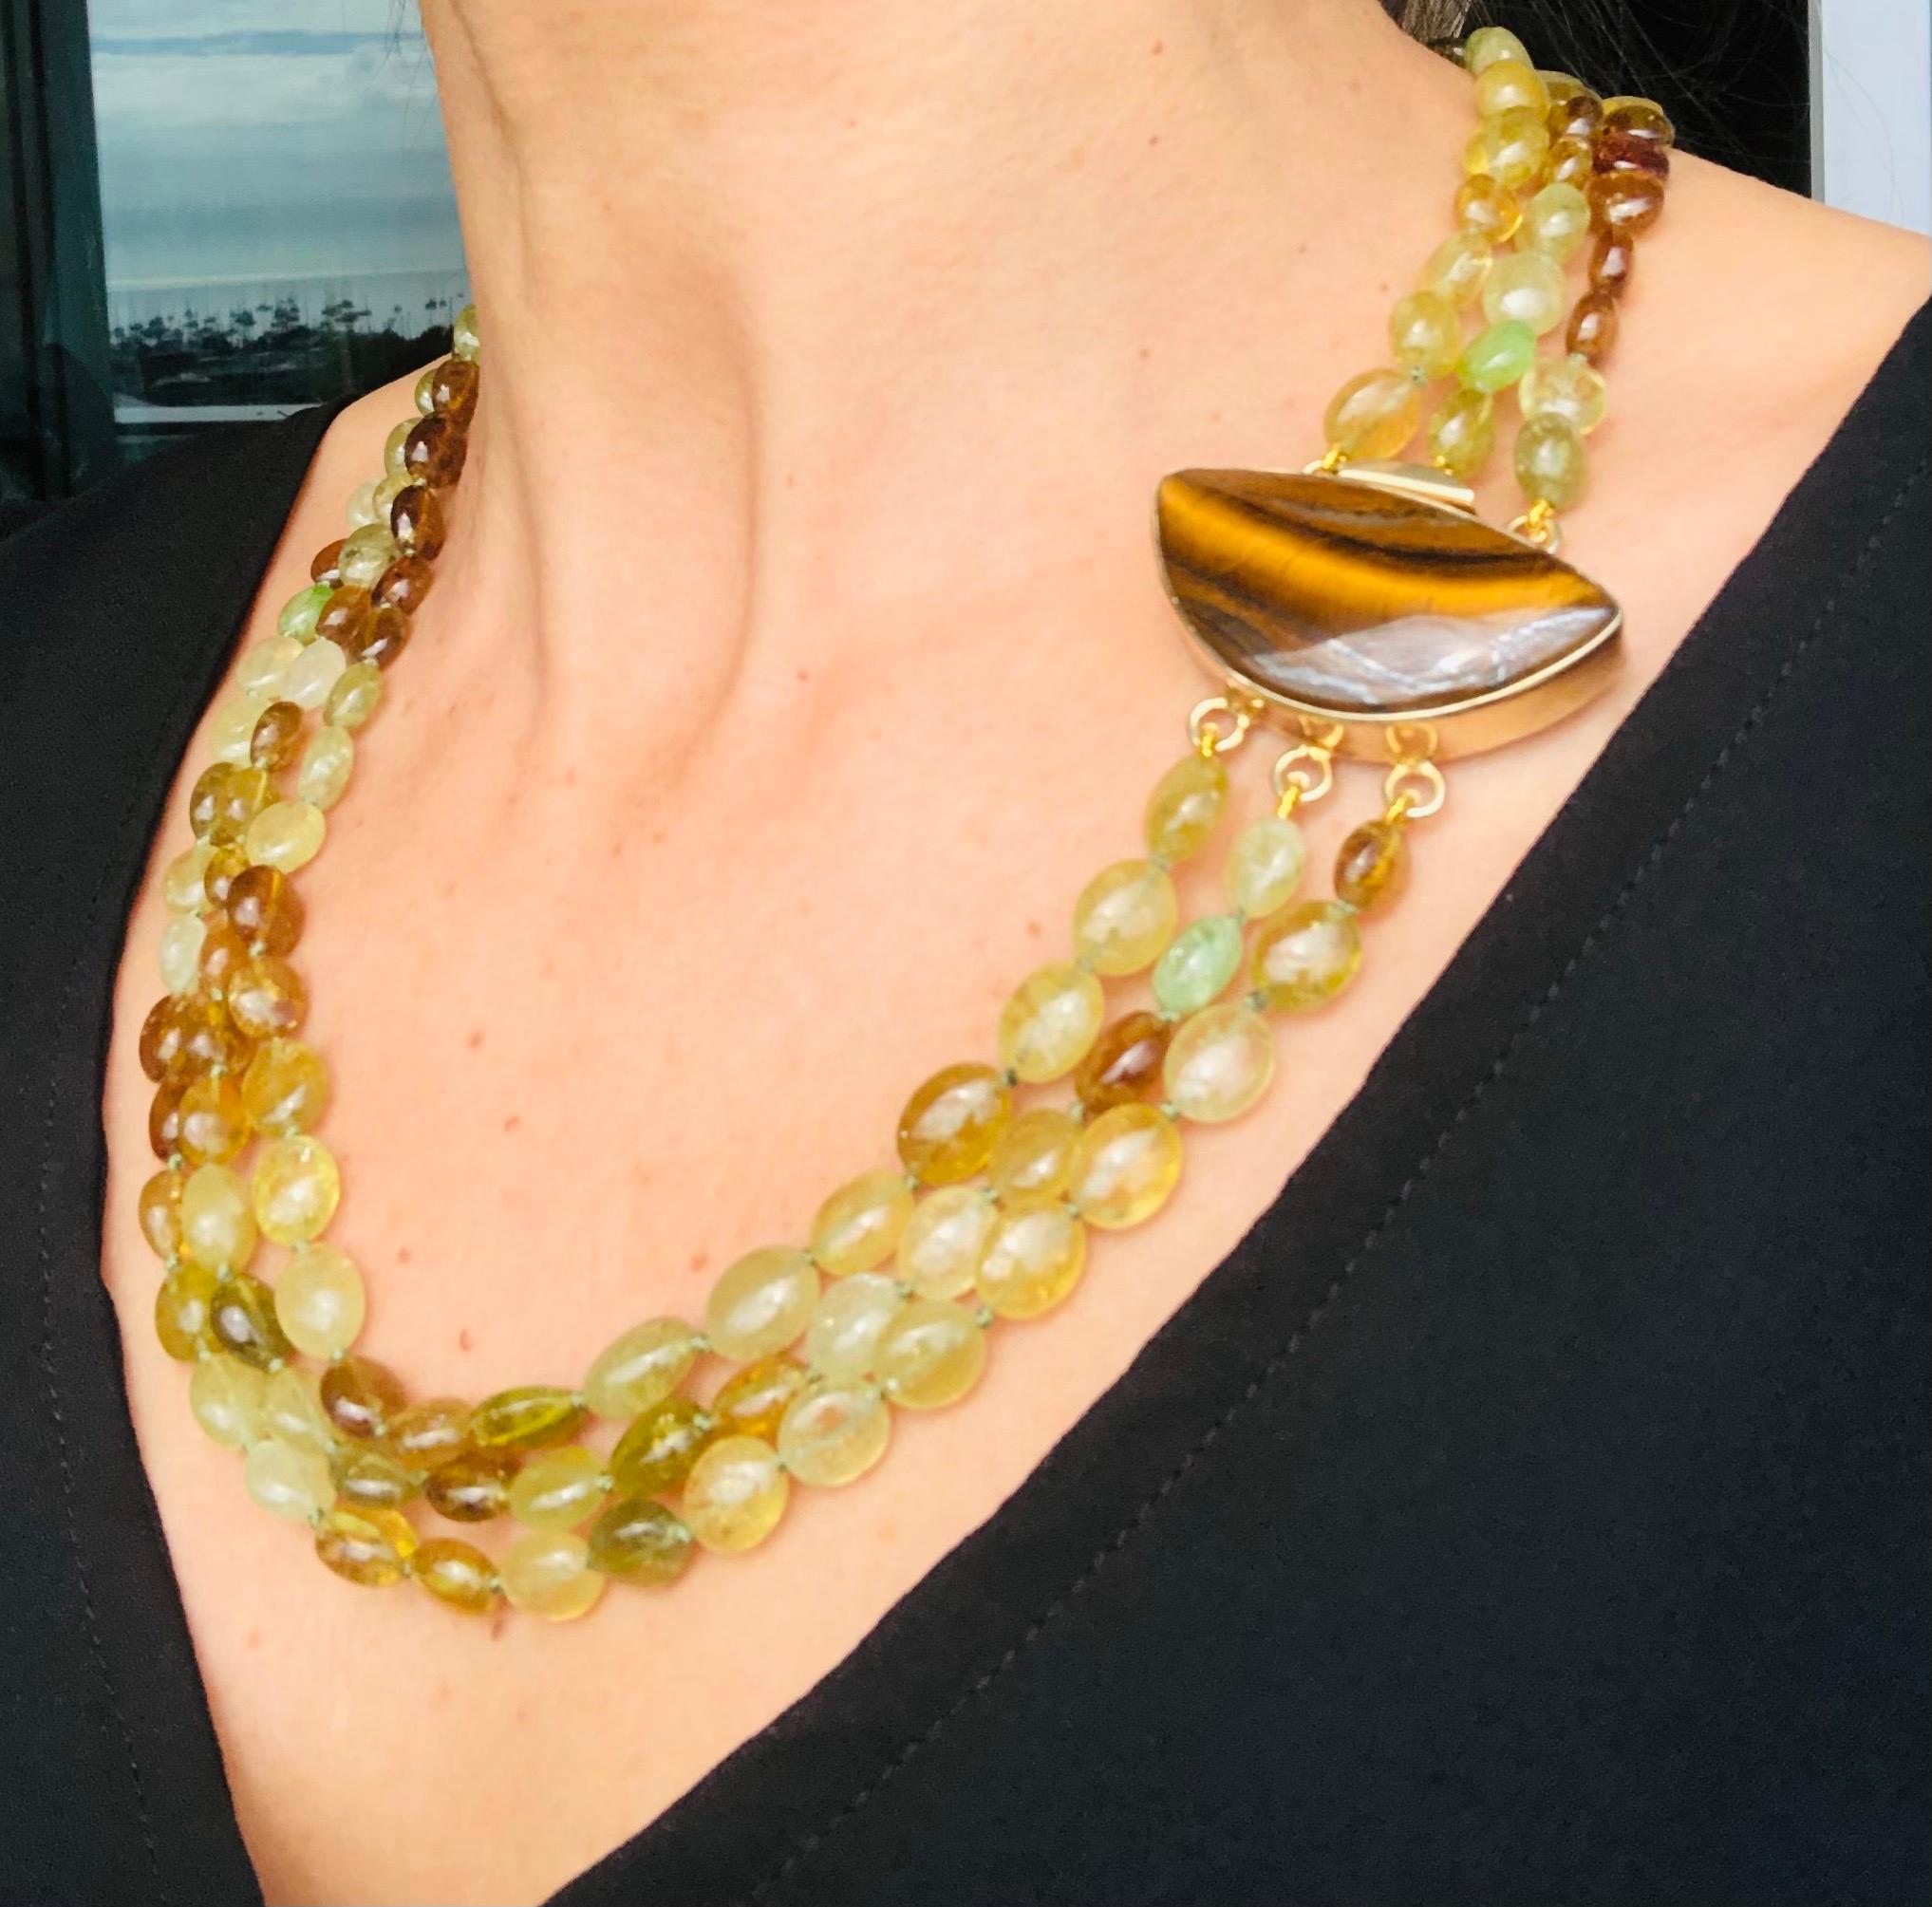 A.Jeschel 3 Strand Green Garnet necklace  (Grossularite) 6